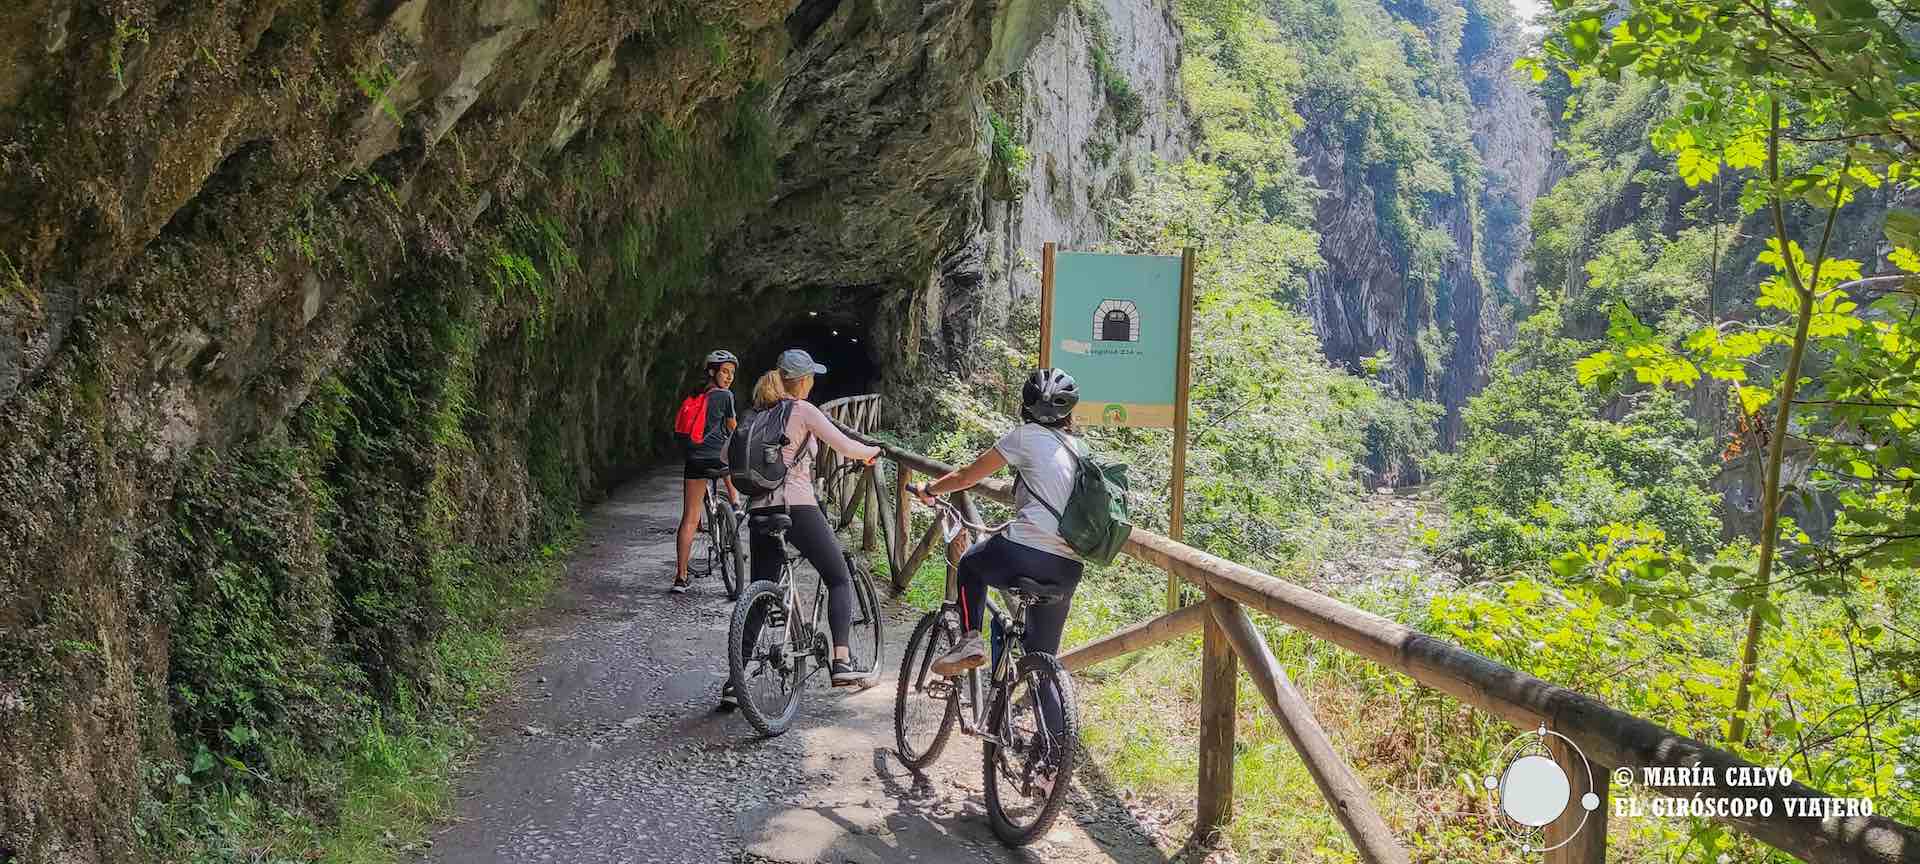 La Senda del Oso en bici. Asturias espectacular en la más célebre vía verde